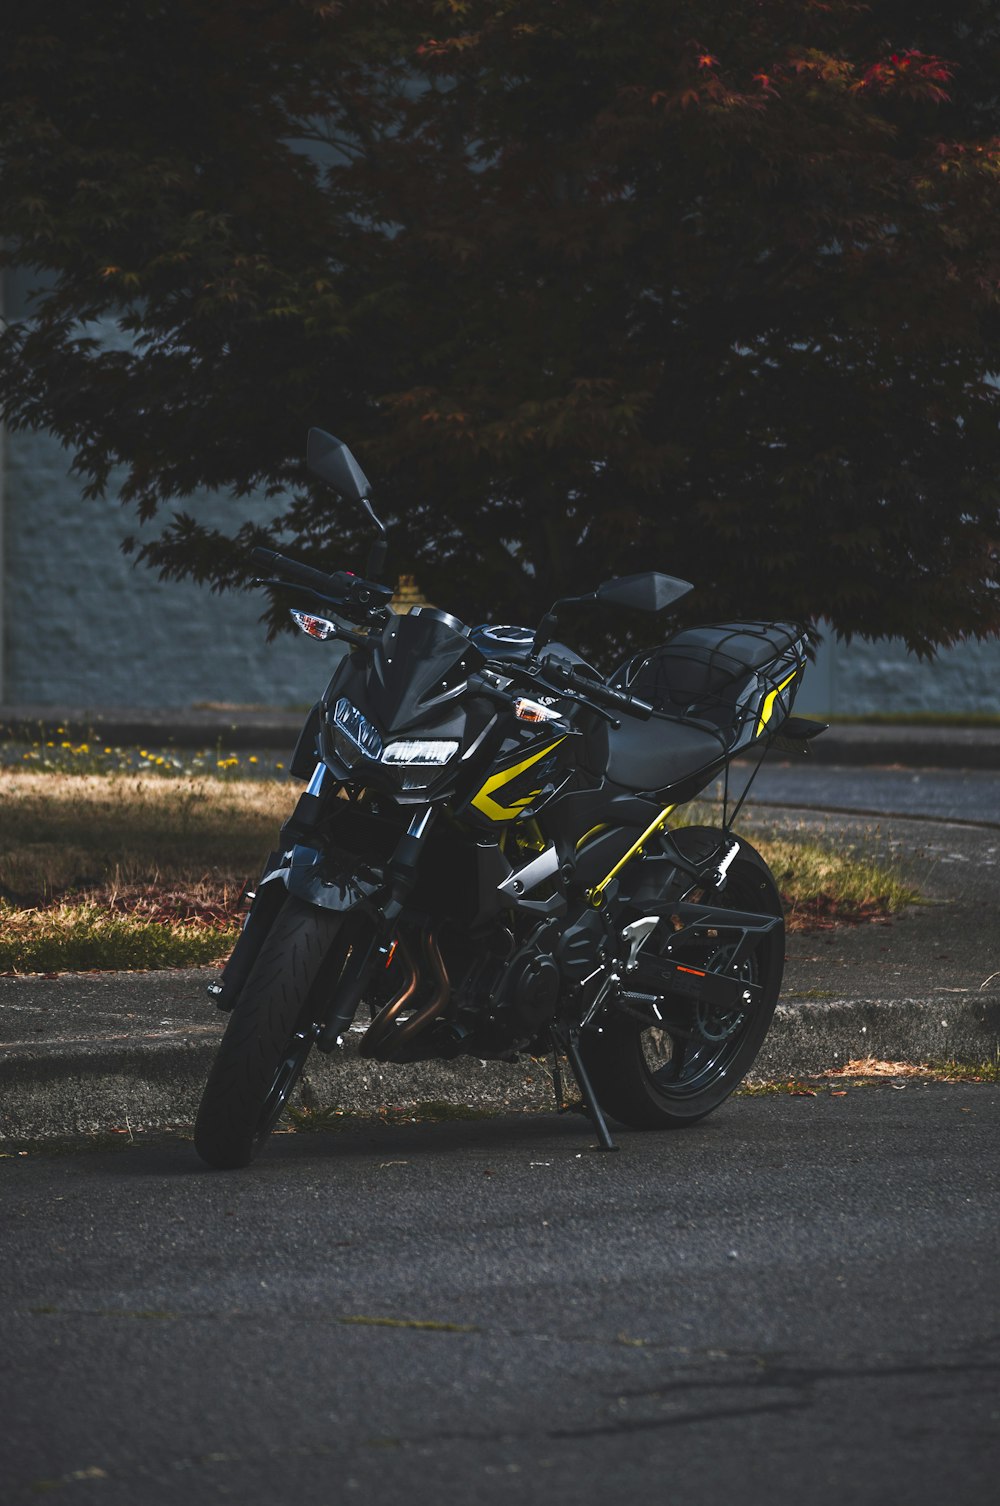 Motocicleta negra y amarilla en la carretera durante el día